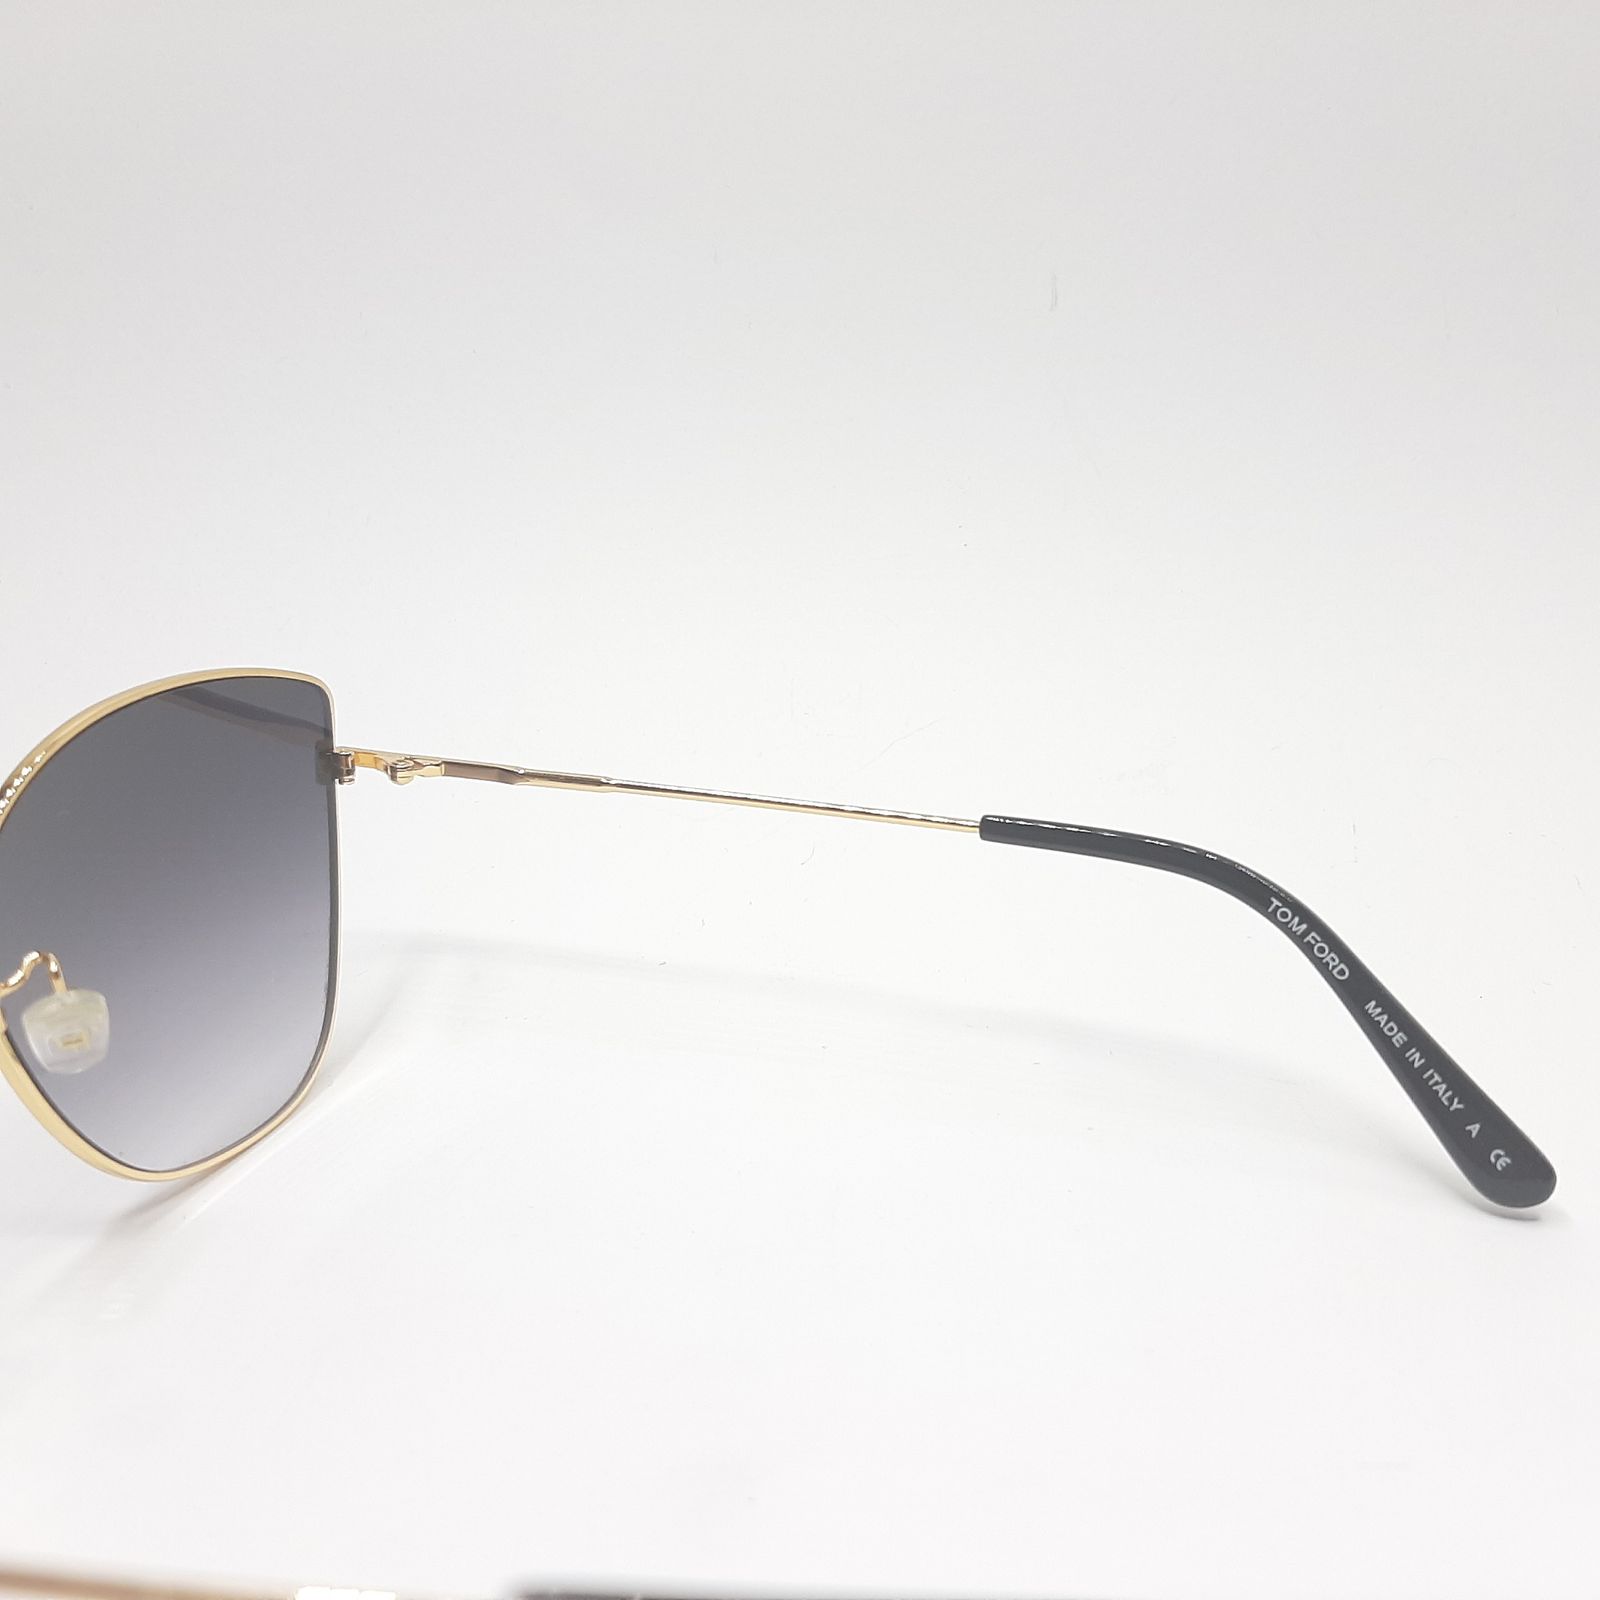 عینک آفتابی زنانه تام فورد مدل 0718c1 -  - 6